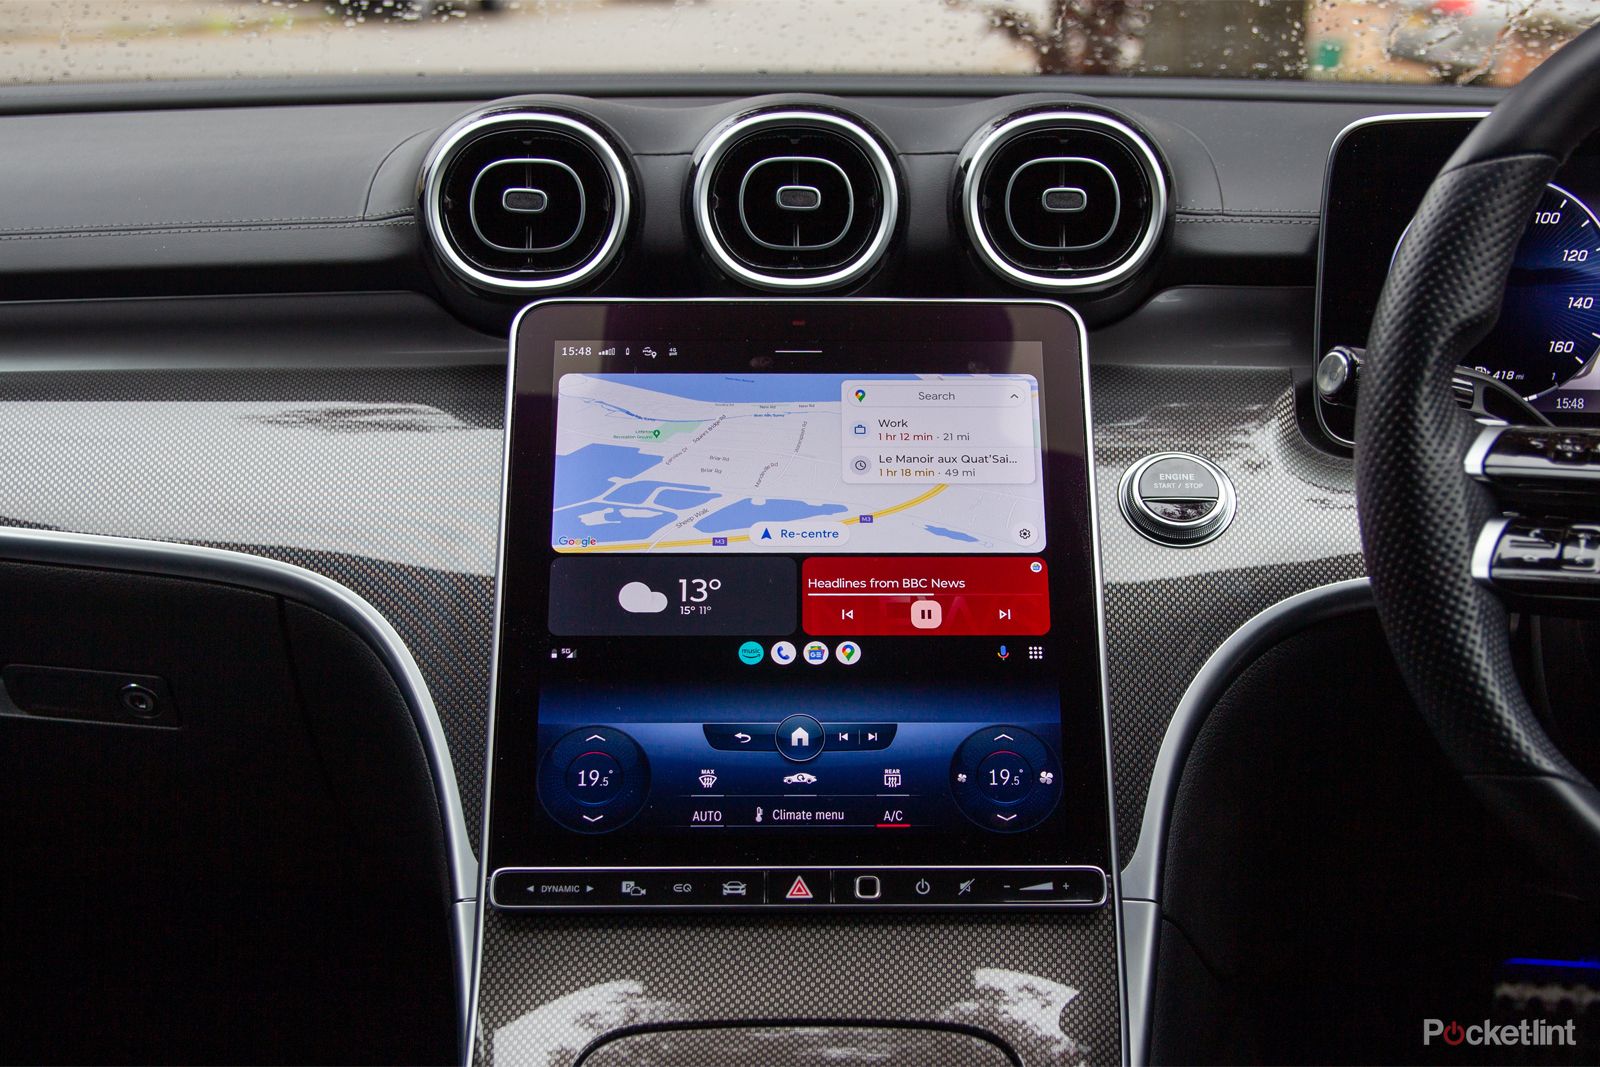 Split screen in Android Auto: noi l'abbiamo attivato. È in arrivo?